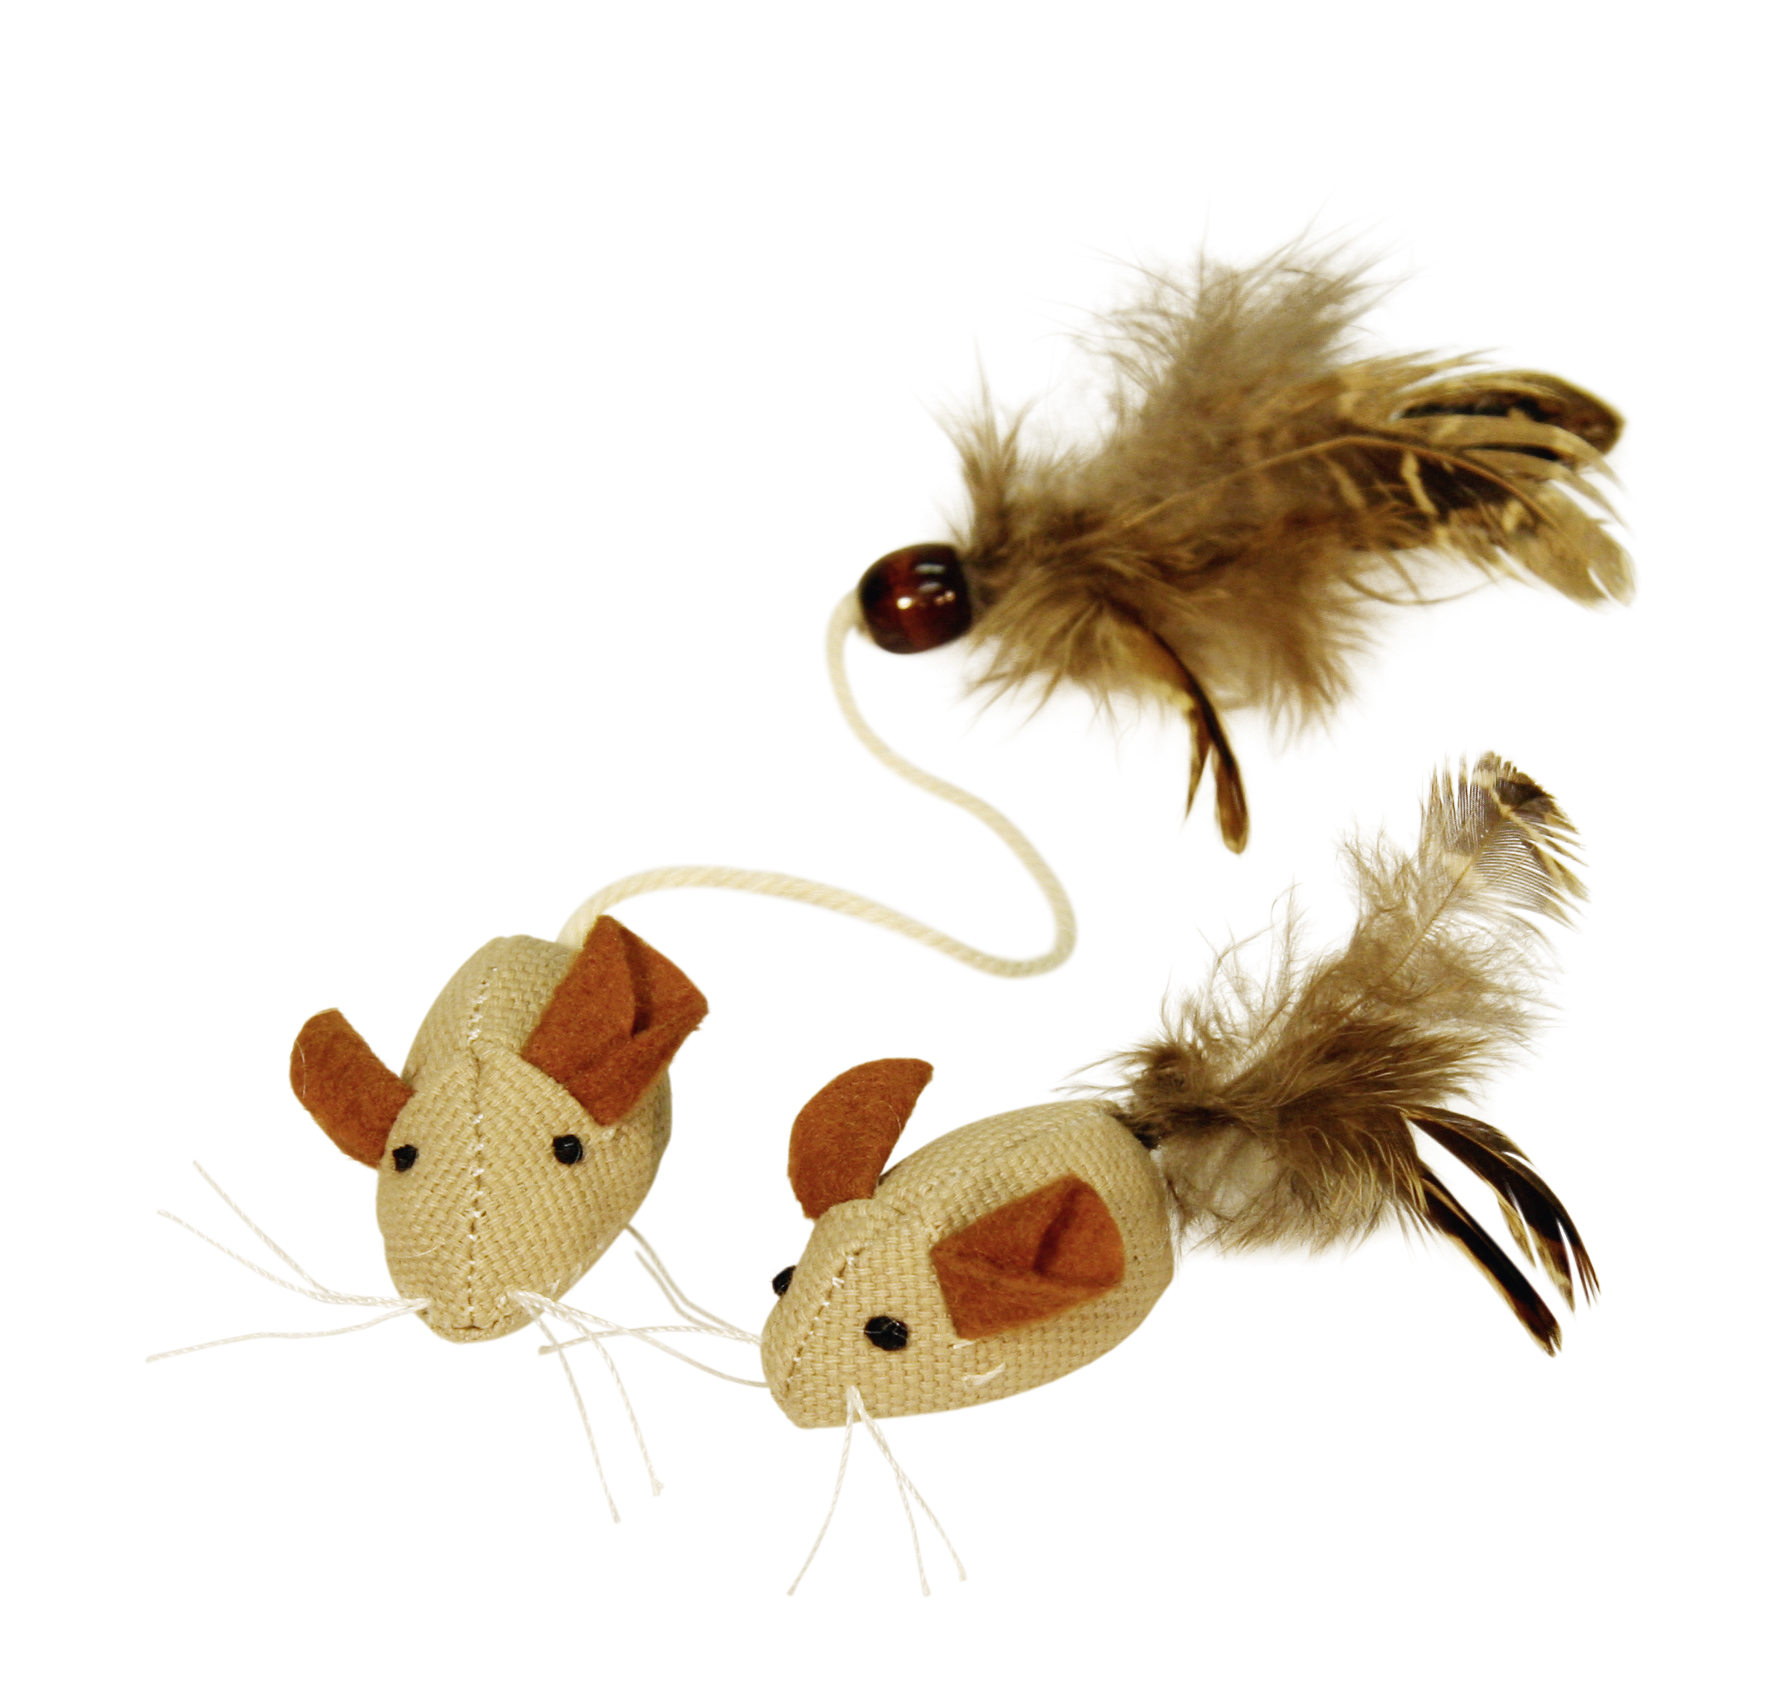 Kissanlelu hiiri ja höyhenet nature 4,5 cm